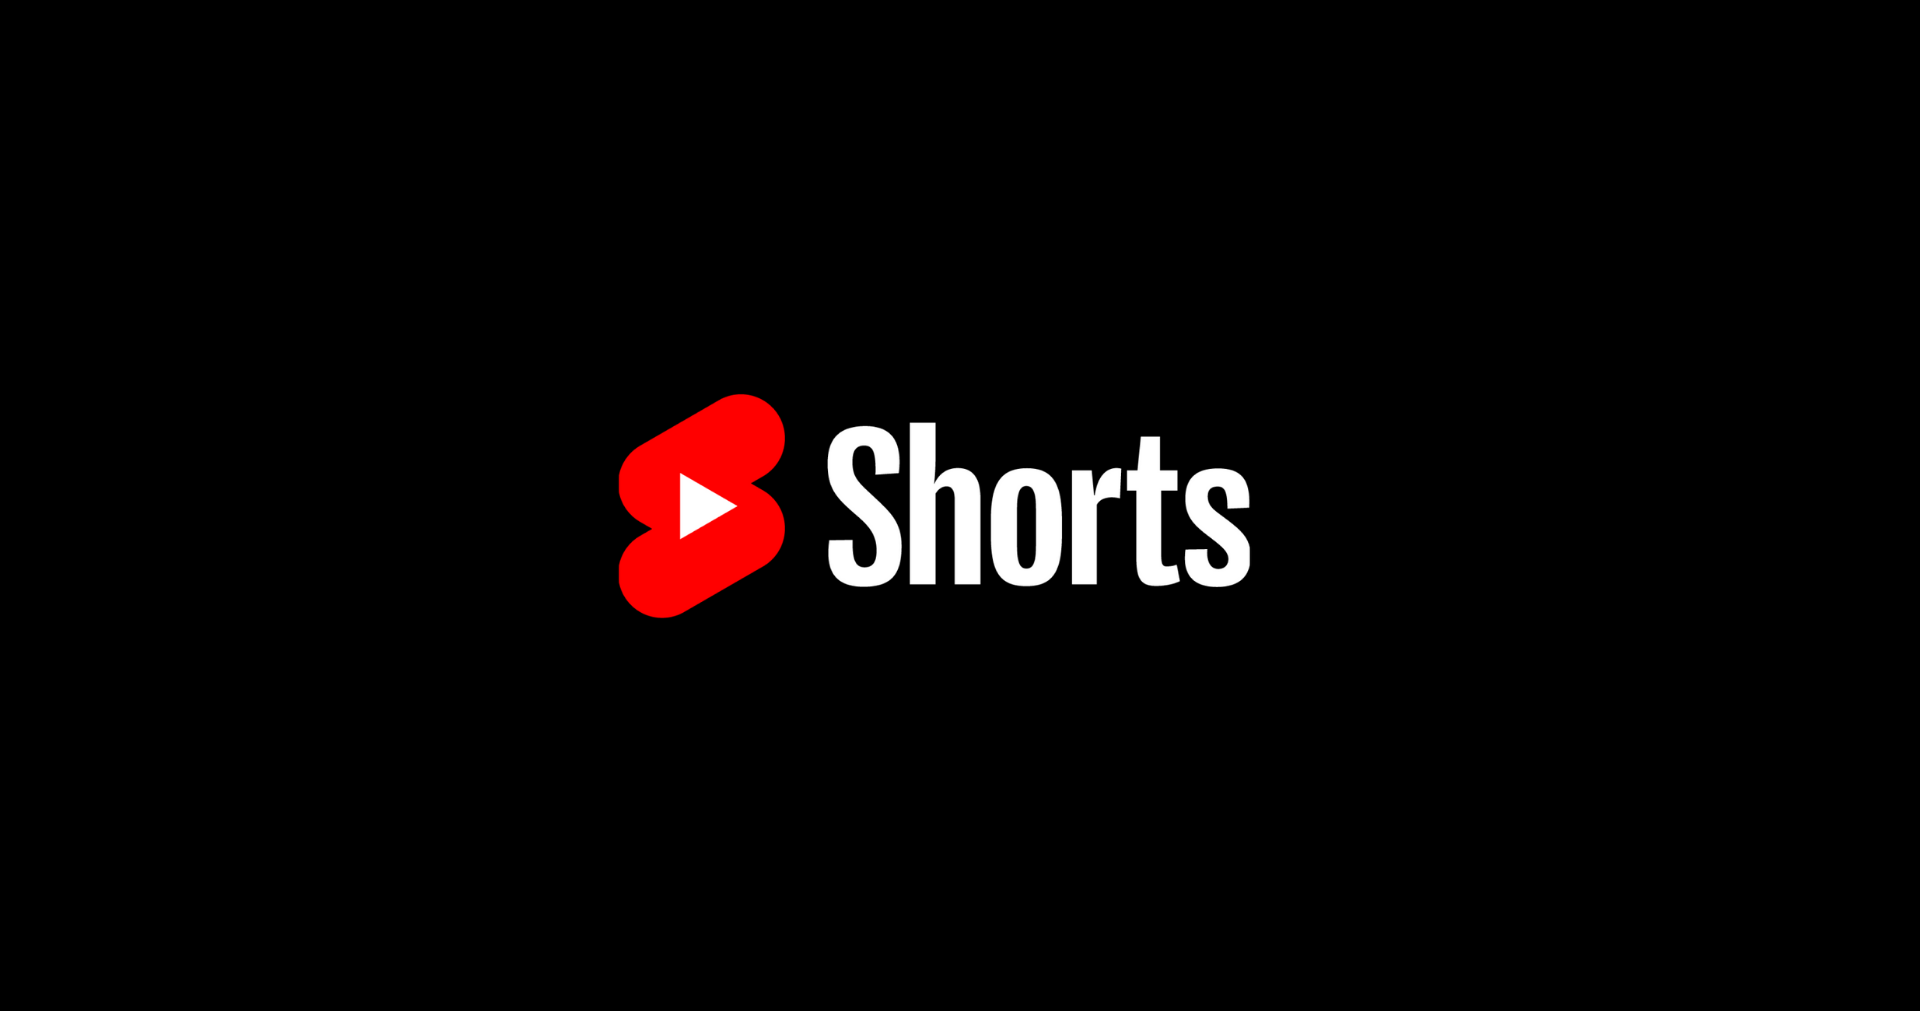 Yt shorts. Ютуб Шортс. Логотип ютуб Шортс. Значок shorts youtube. Шортс видео.